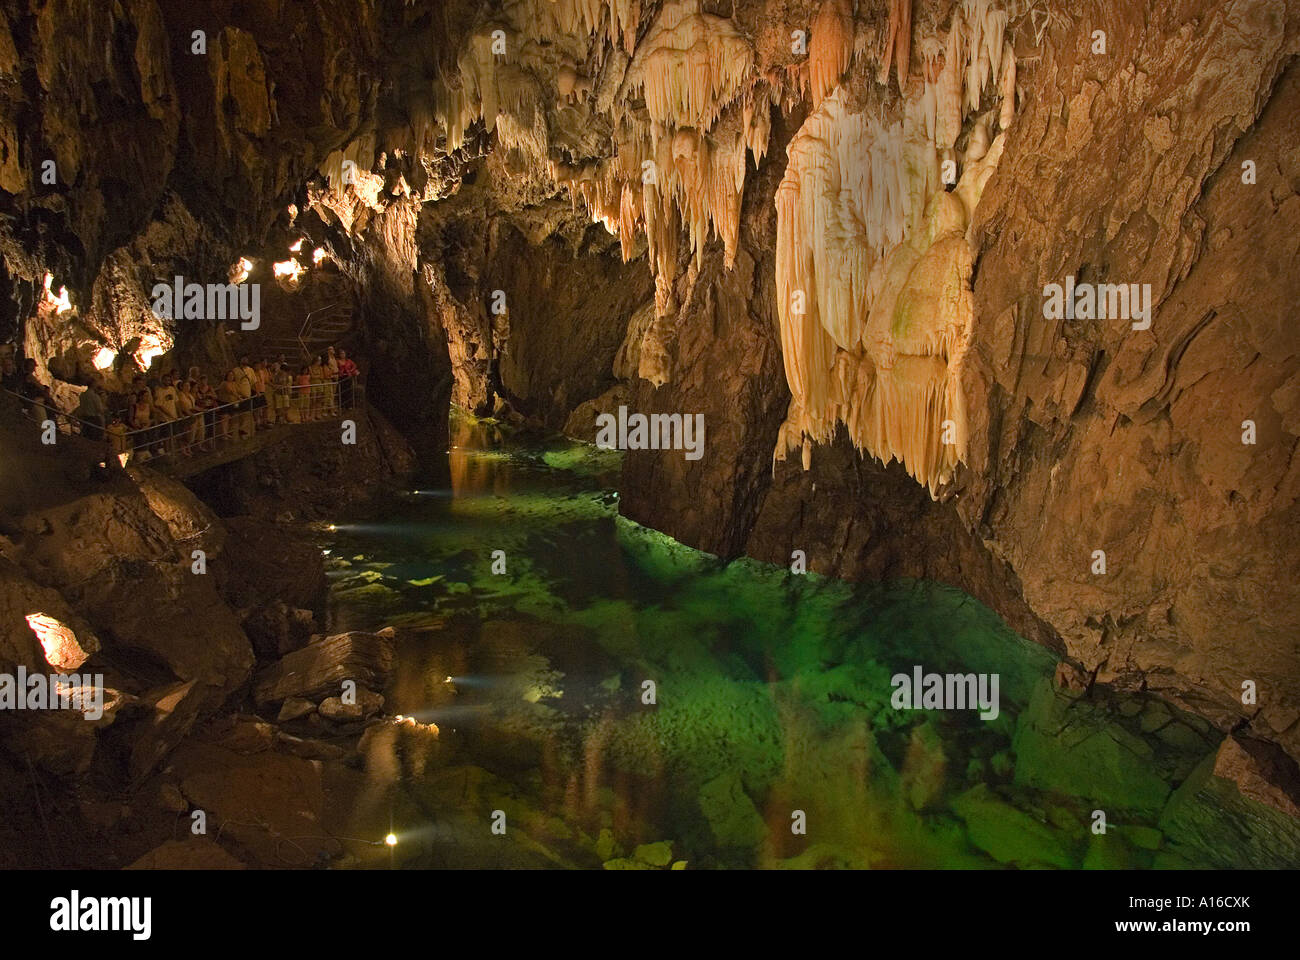 Gruta de las Maravillas the largest cave in Spain Aracena Huelva province Spain Stock Photo